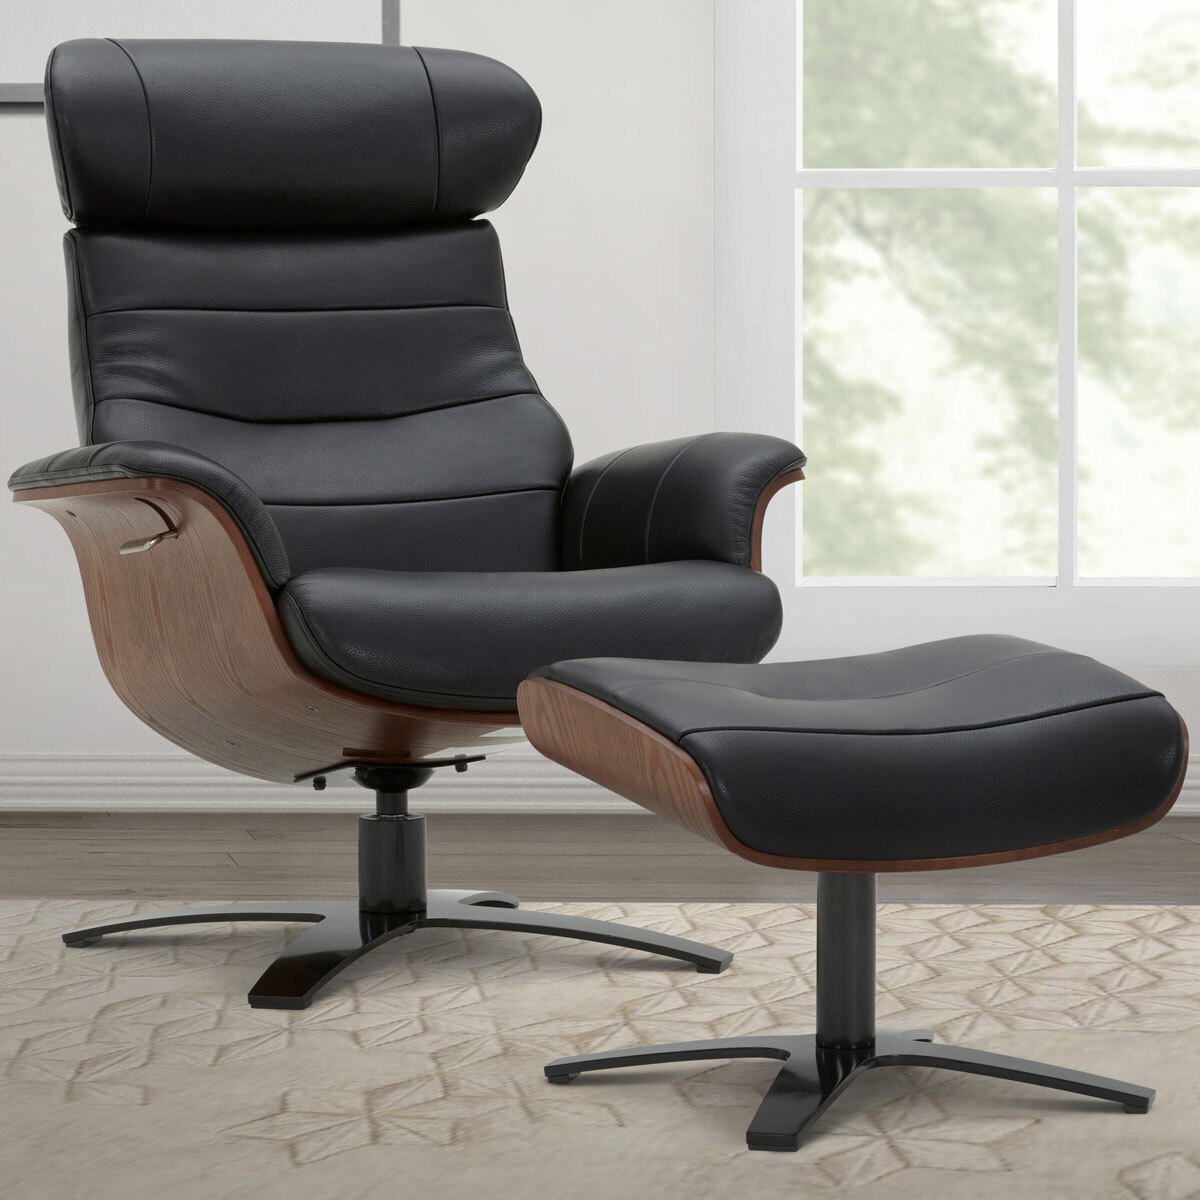 Karma Black Leather Swivel Chair, Leather Recliner Swivel Rocker